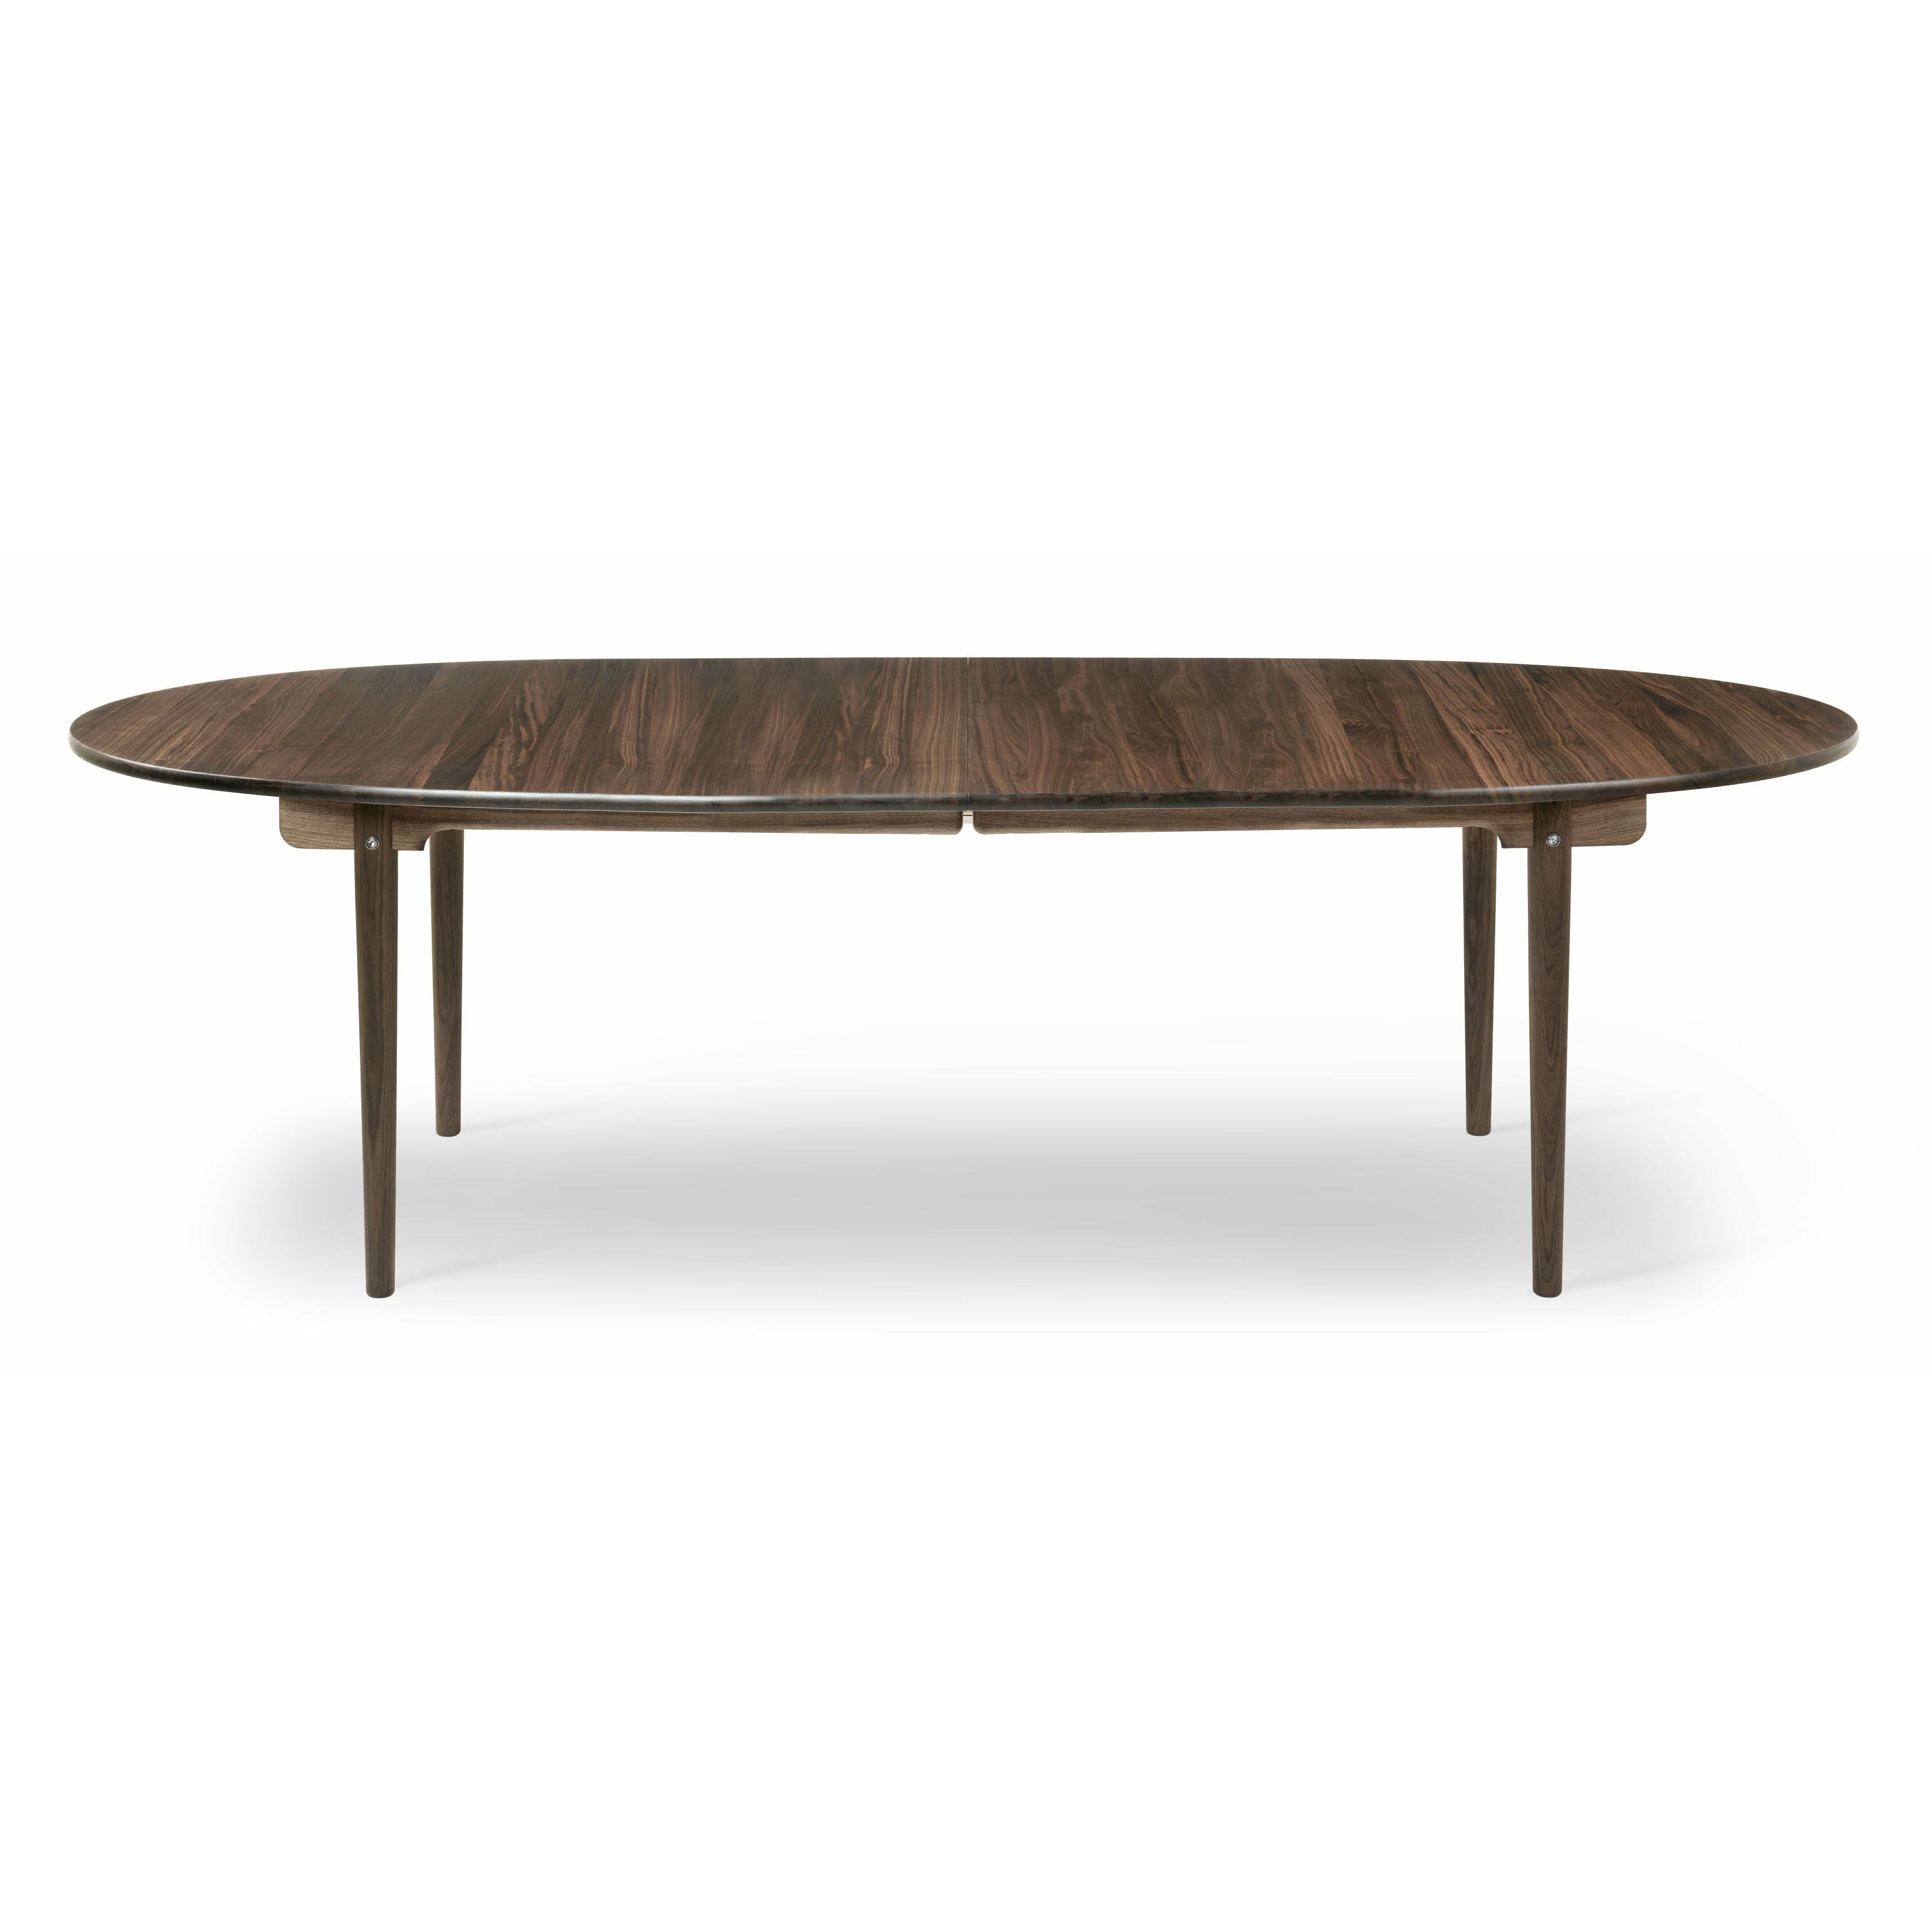 Carl Hansen CH339 matbord designat för 2 utdragbara plattor, valnötoljad